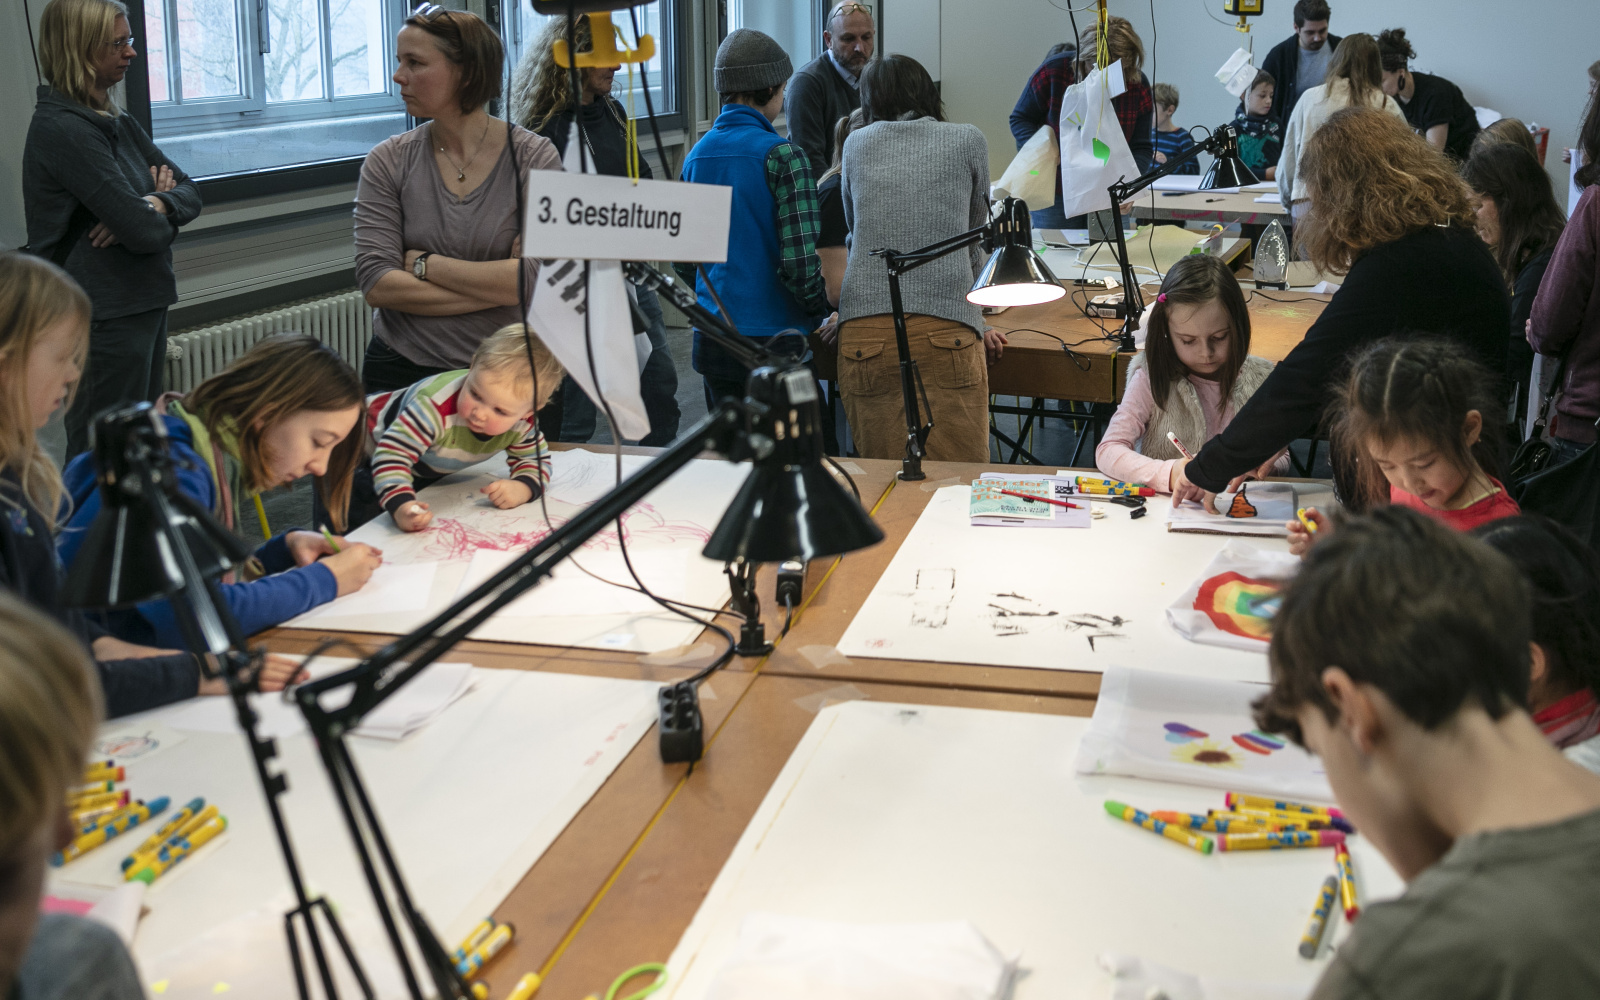 Viele Kinder malen am Tisch bei einem Workshop.